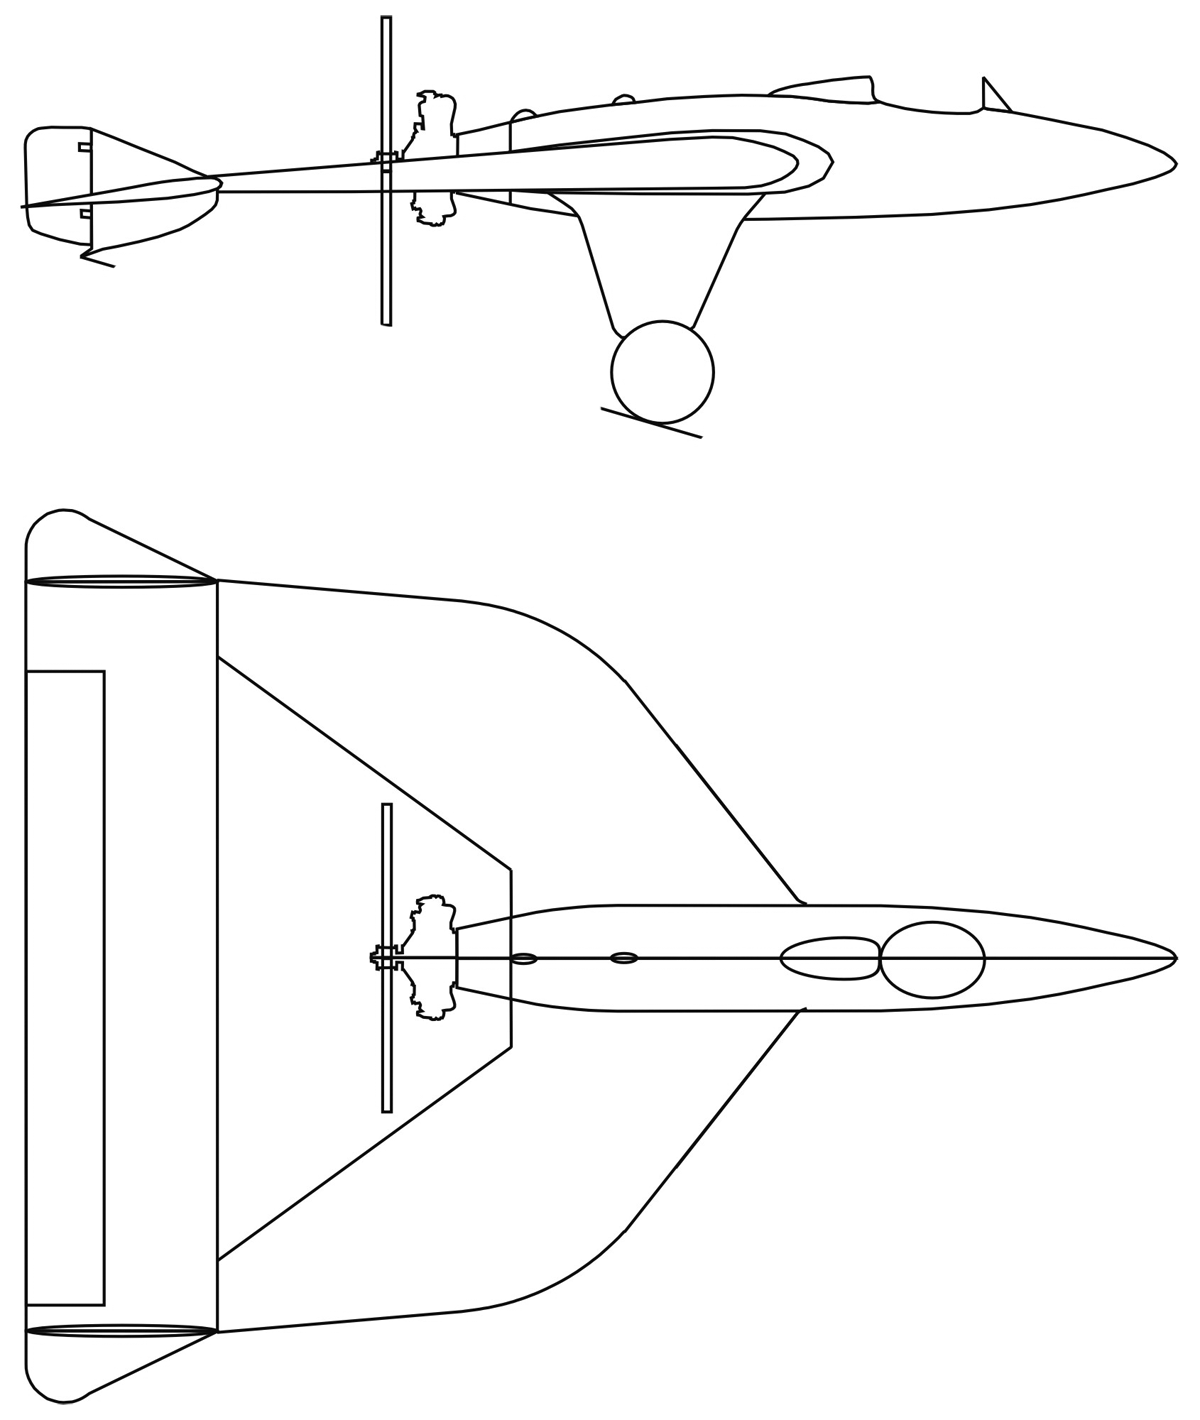 El esquema lineal del avión